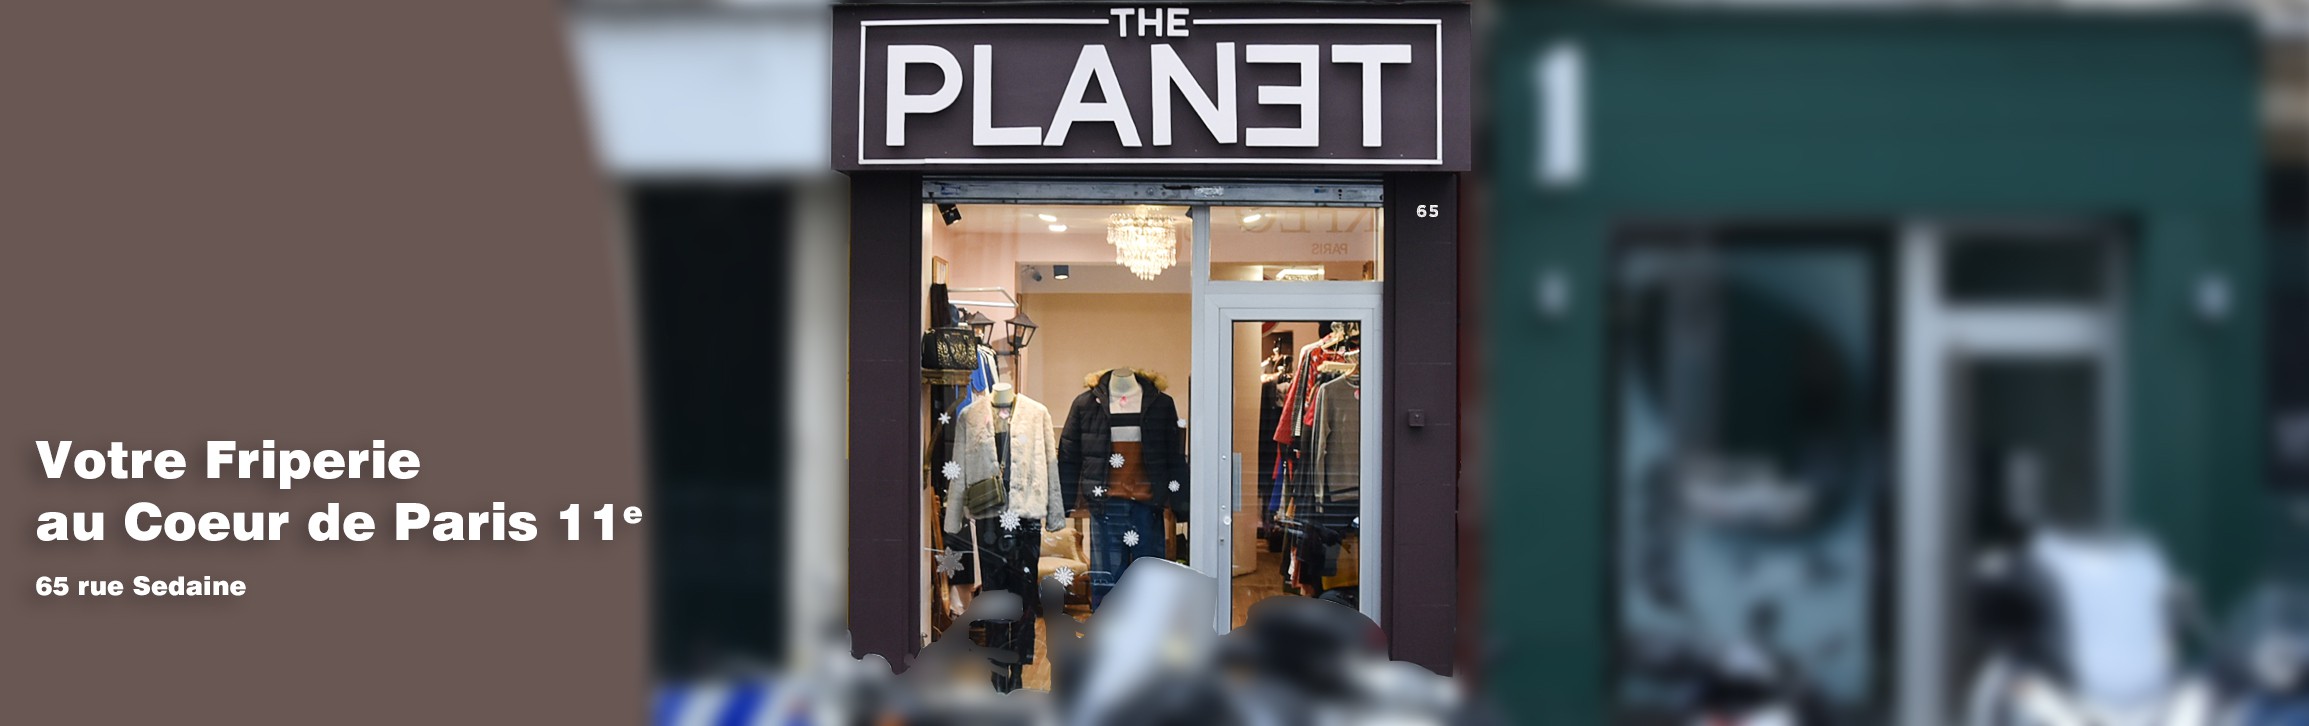 The Planet - Friperie 11e Paris - 65 rue Sedaine 75011 Paris